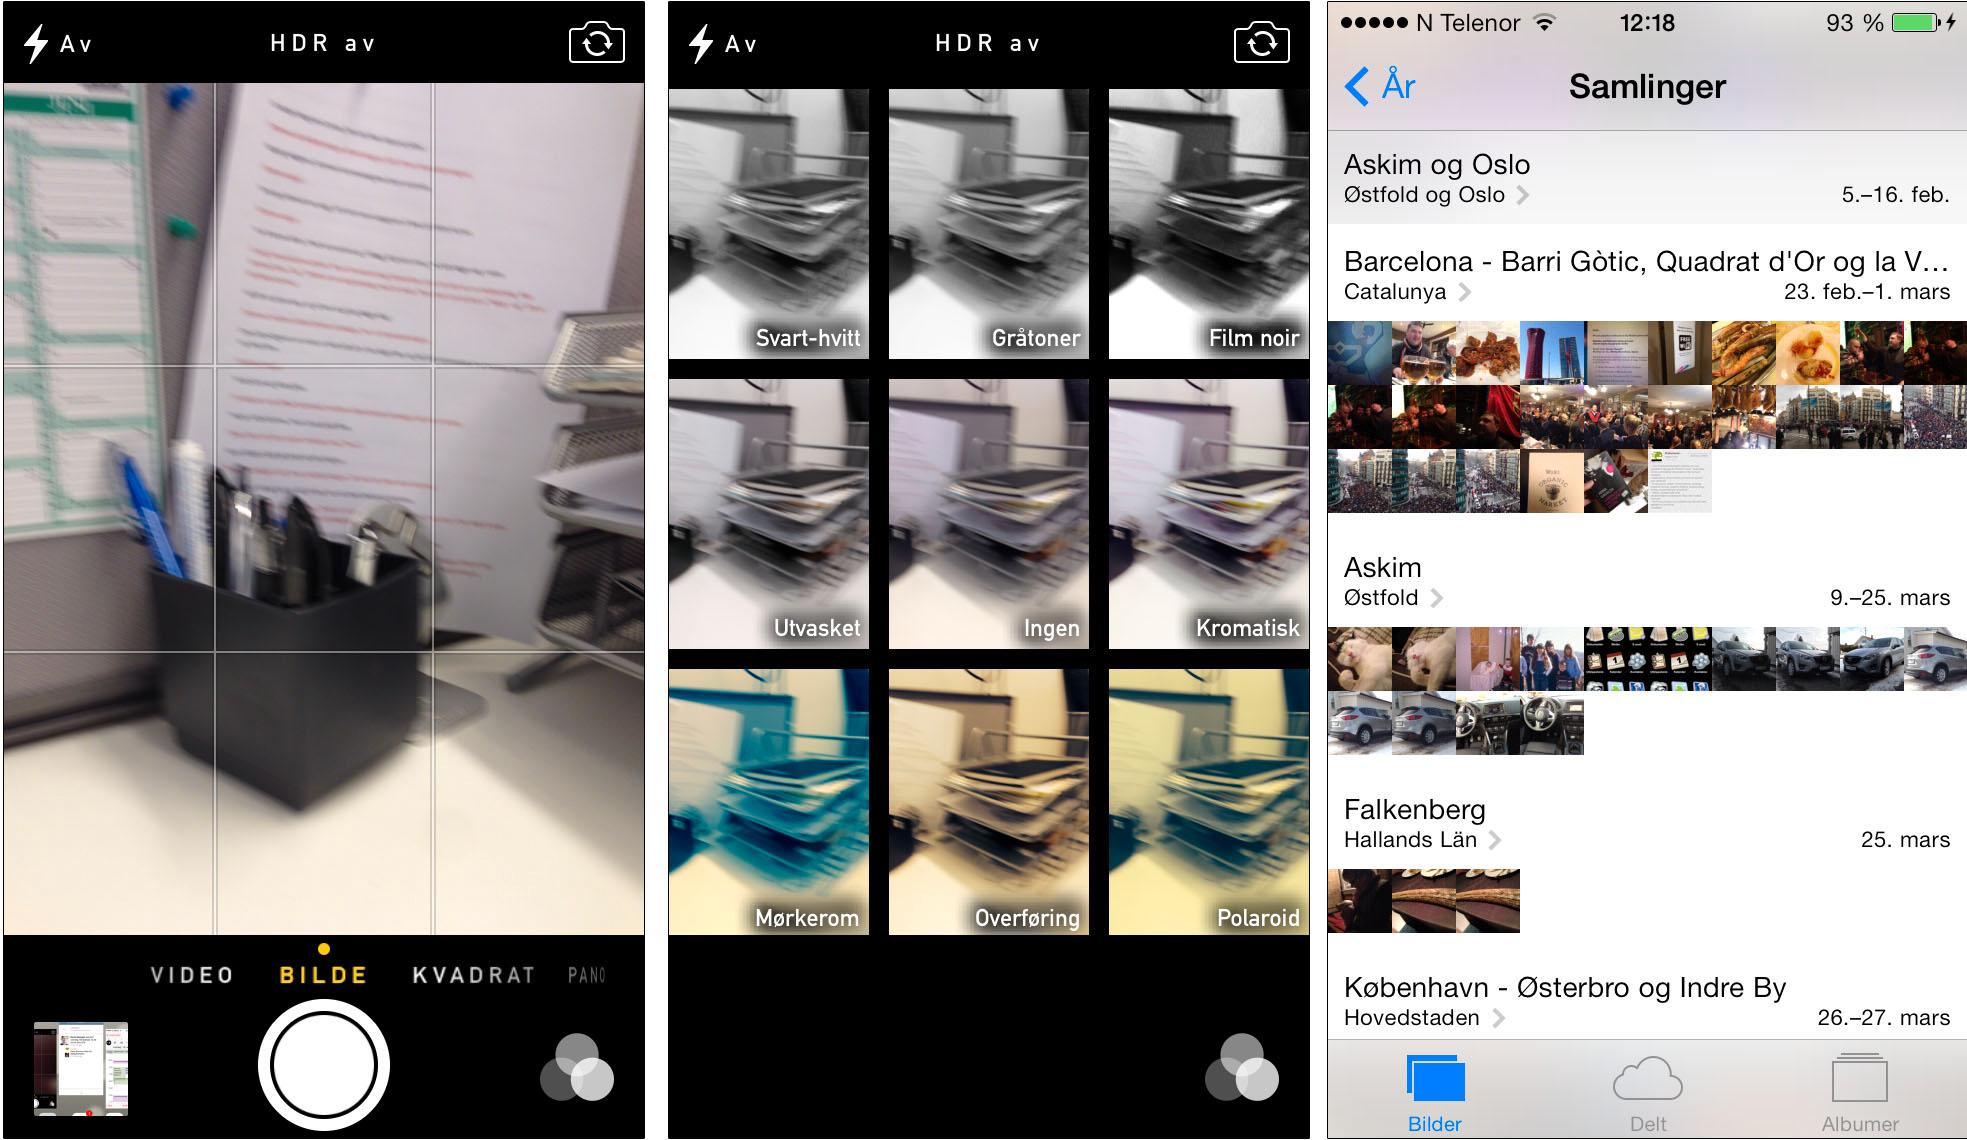 Kamerafunksjonen i iOS 7 har fått mange forbedringer, og bildegalleriet (helt til høyre) gir mye bedre oversikt over bildene dine enn før.